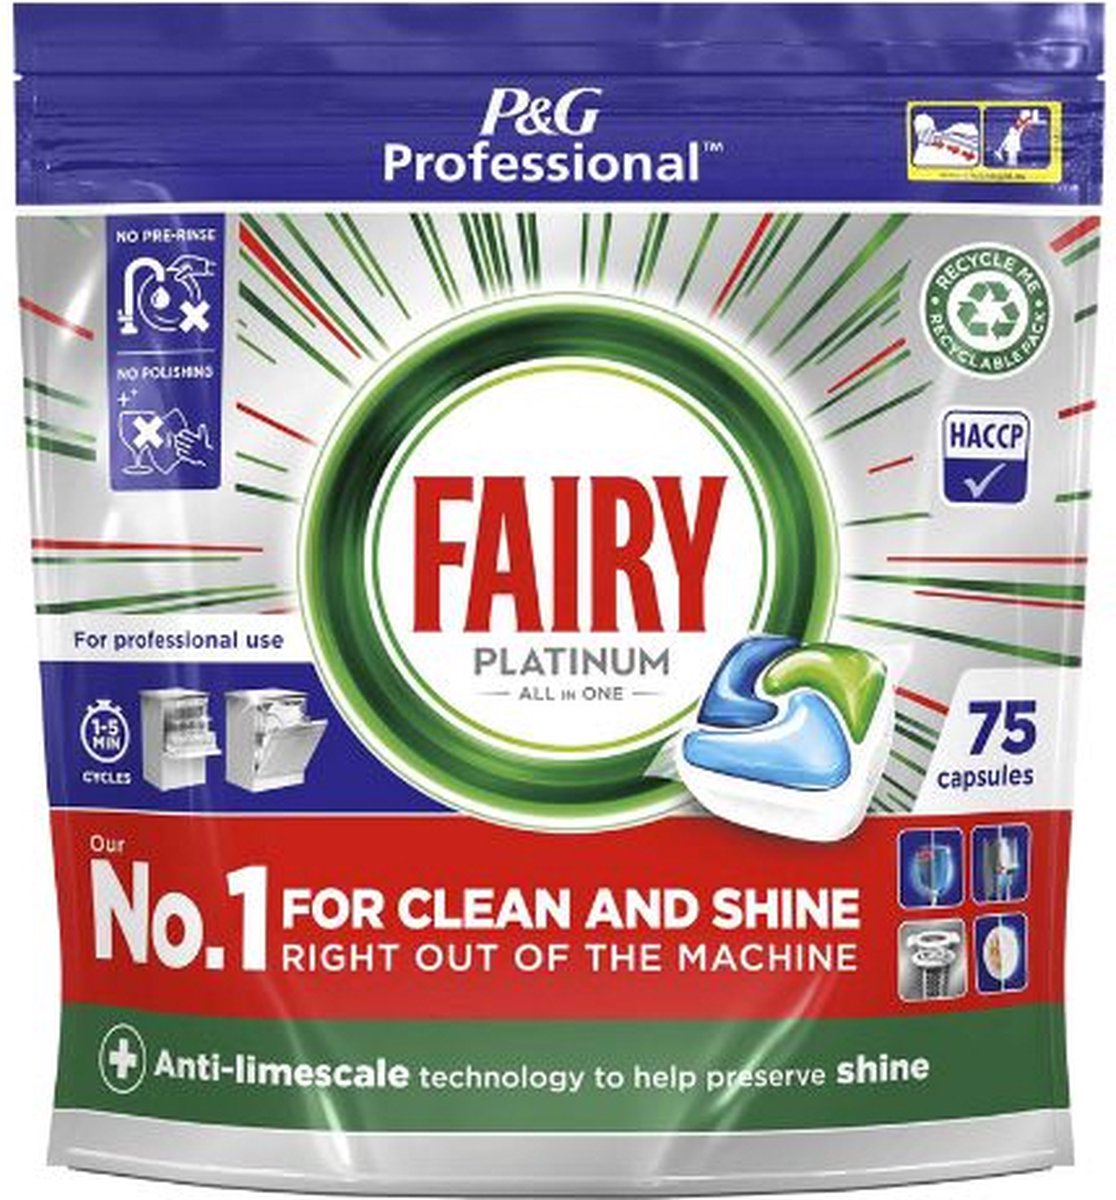 Tablettes pour Lave-vaisselle Fairy Platinum